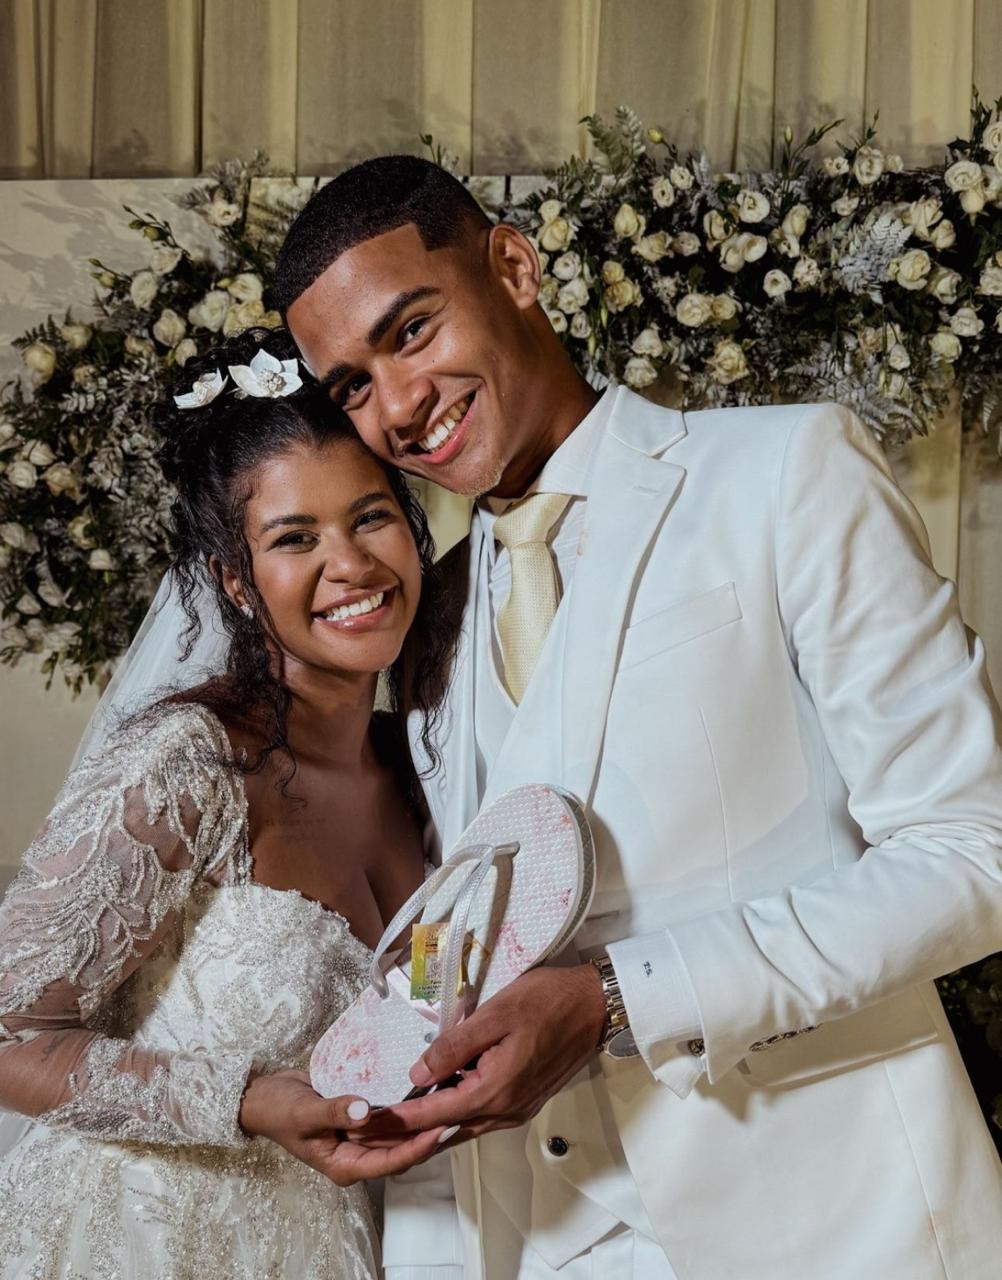 Com mais de 3,4 milhões de seguidores, Sheuba e Tiago Souza se casam em cerimônia com diversos influenciadores da Bahia